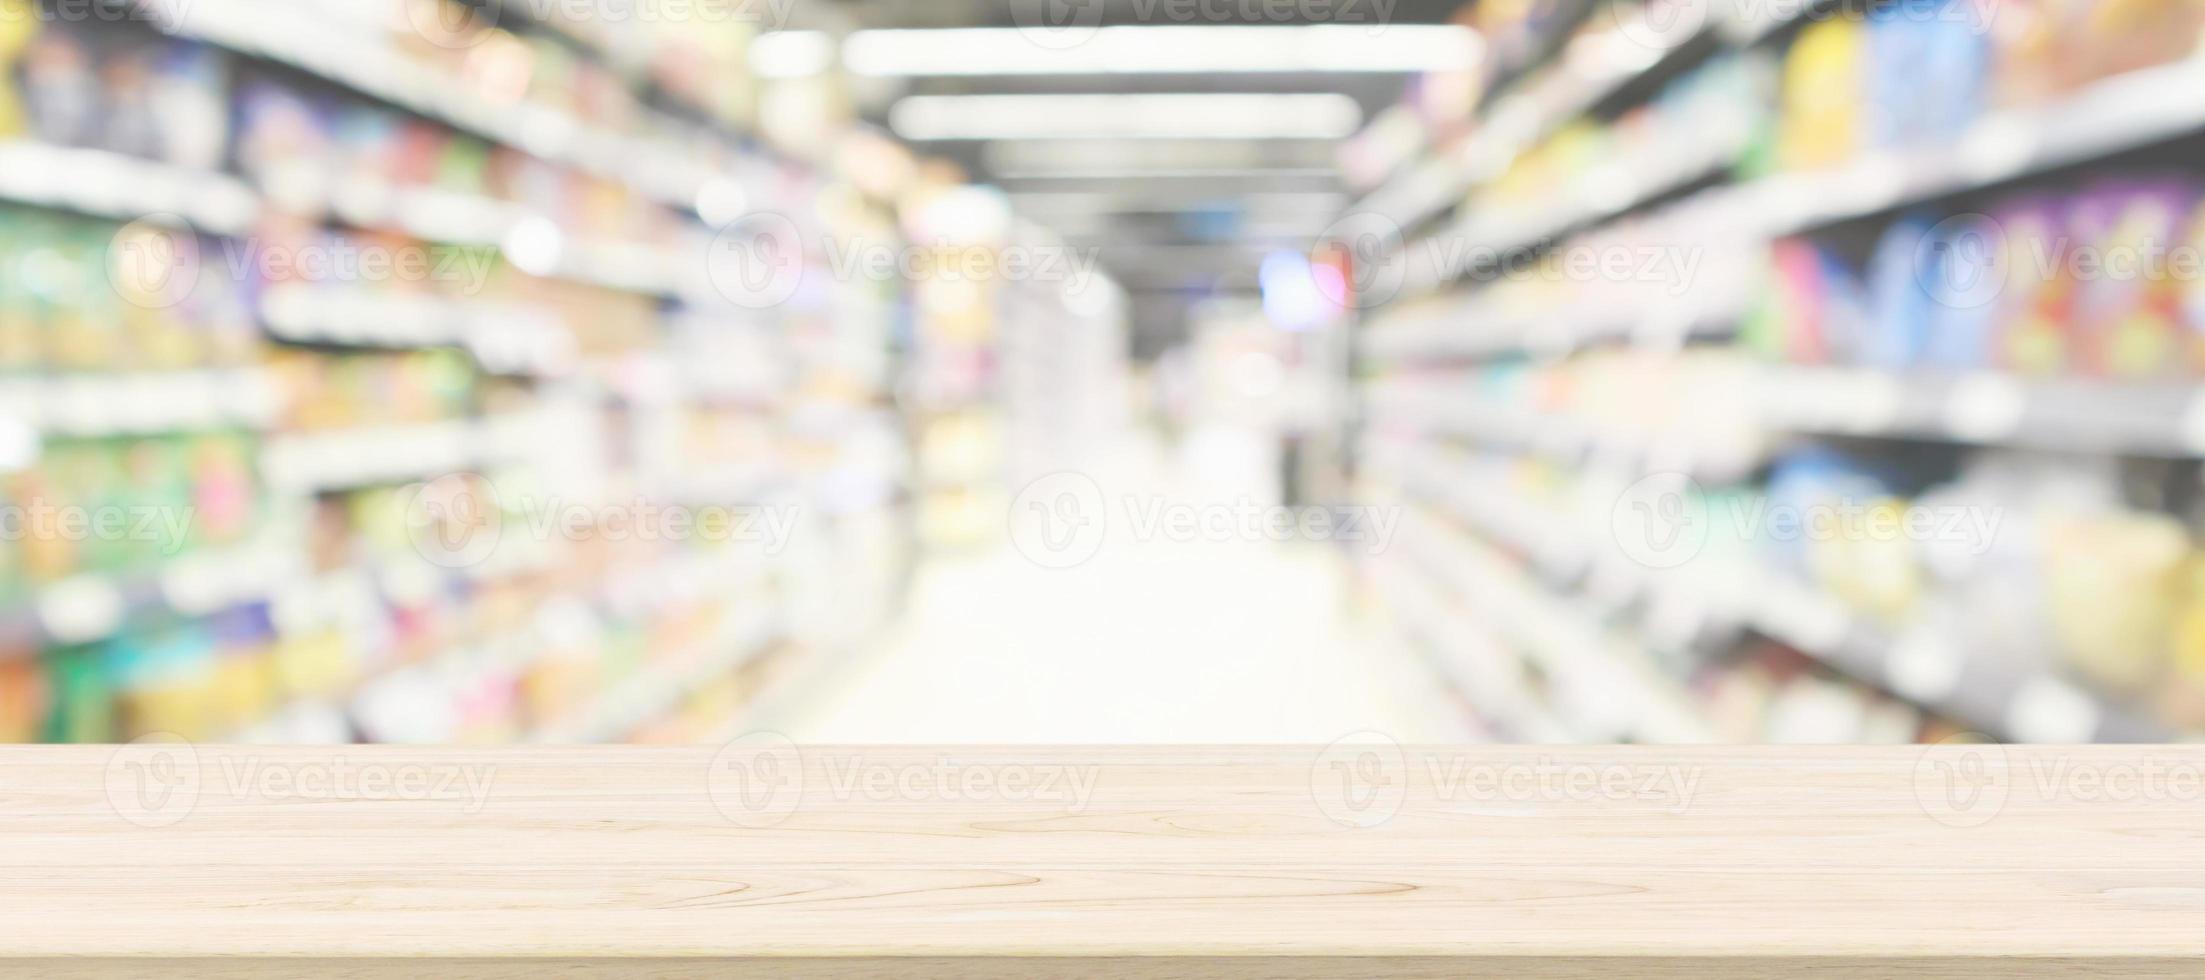 trä bordsskiva med supermarket gång oskärpa bakgrund för produktvisning foto